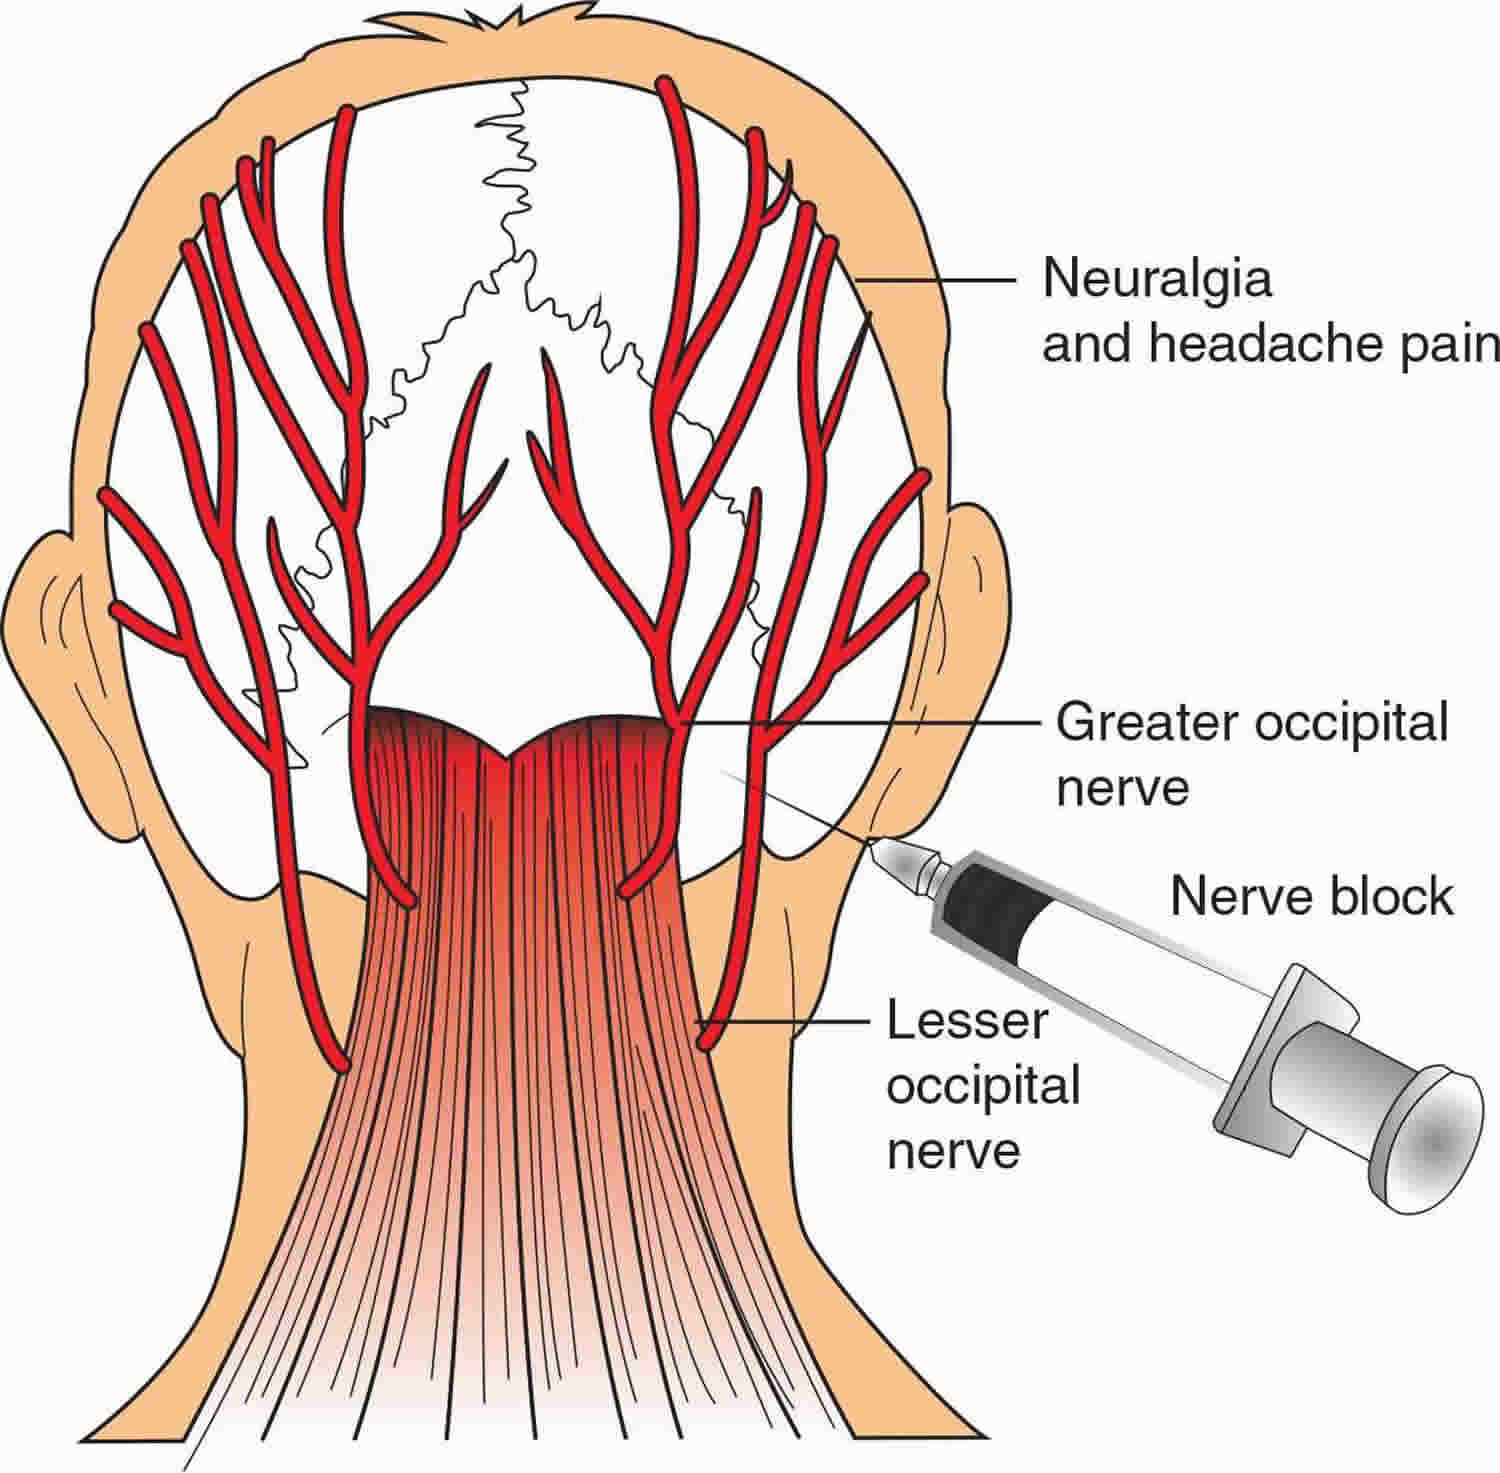 nerve block for migraines